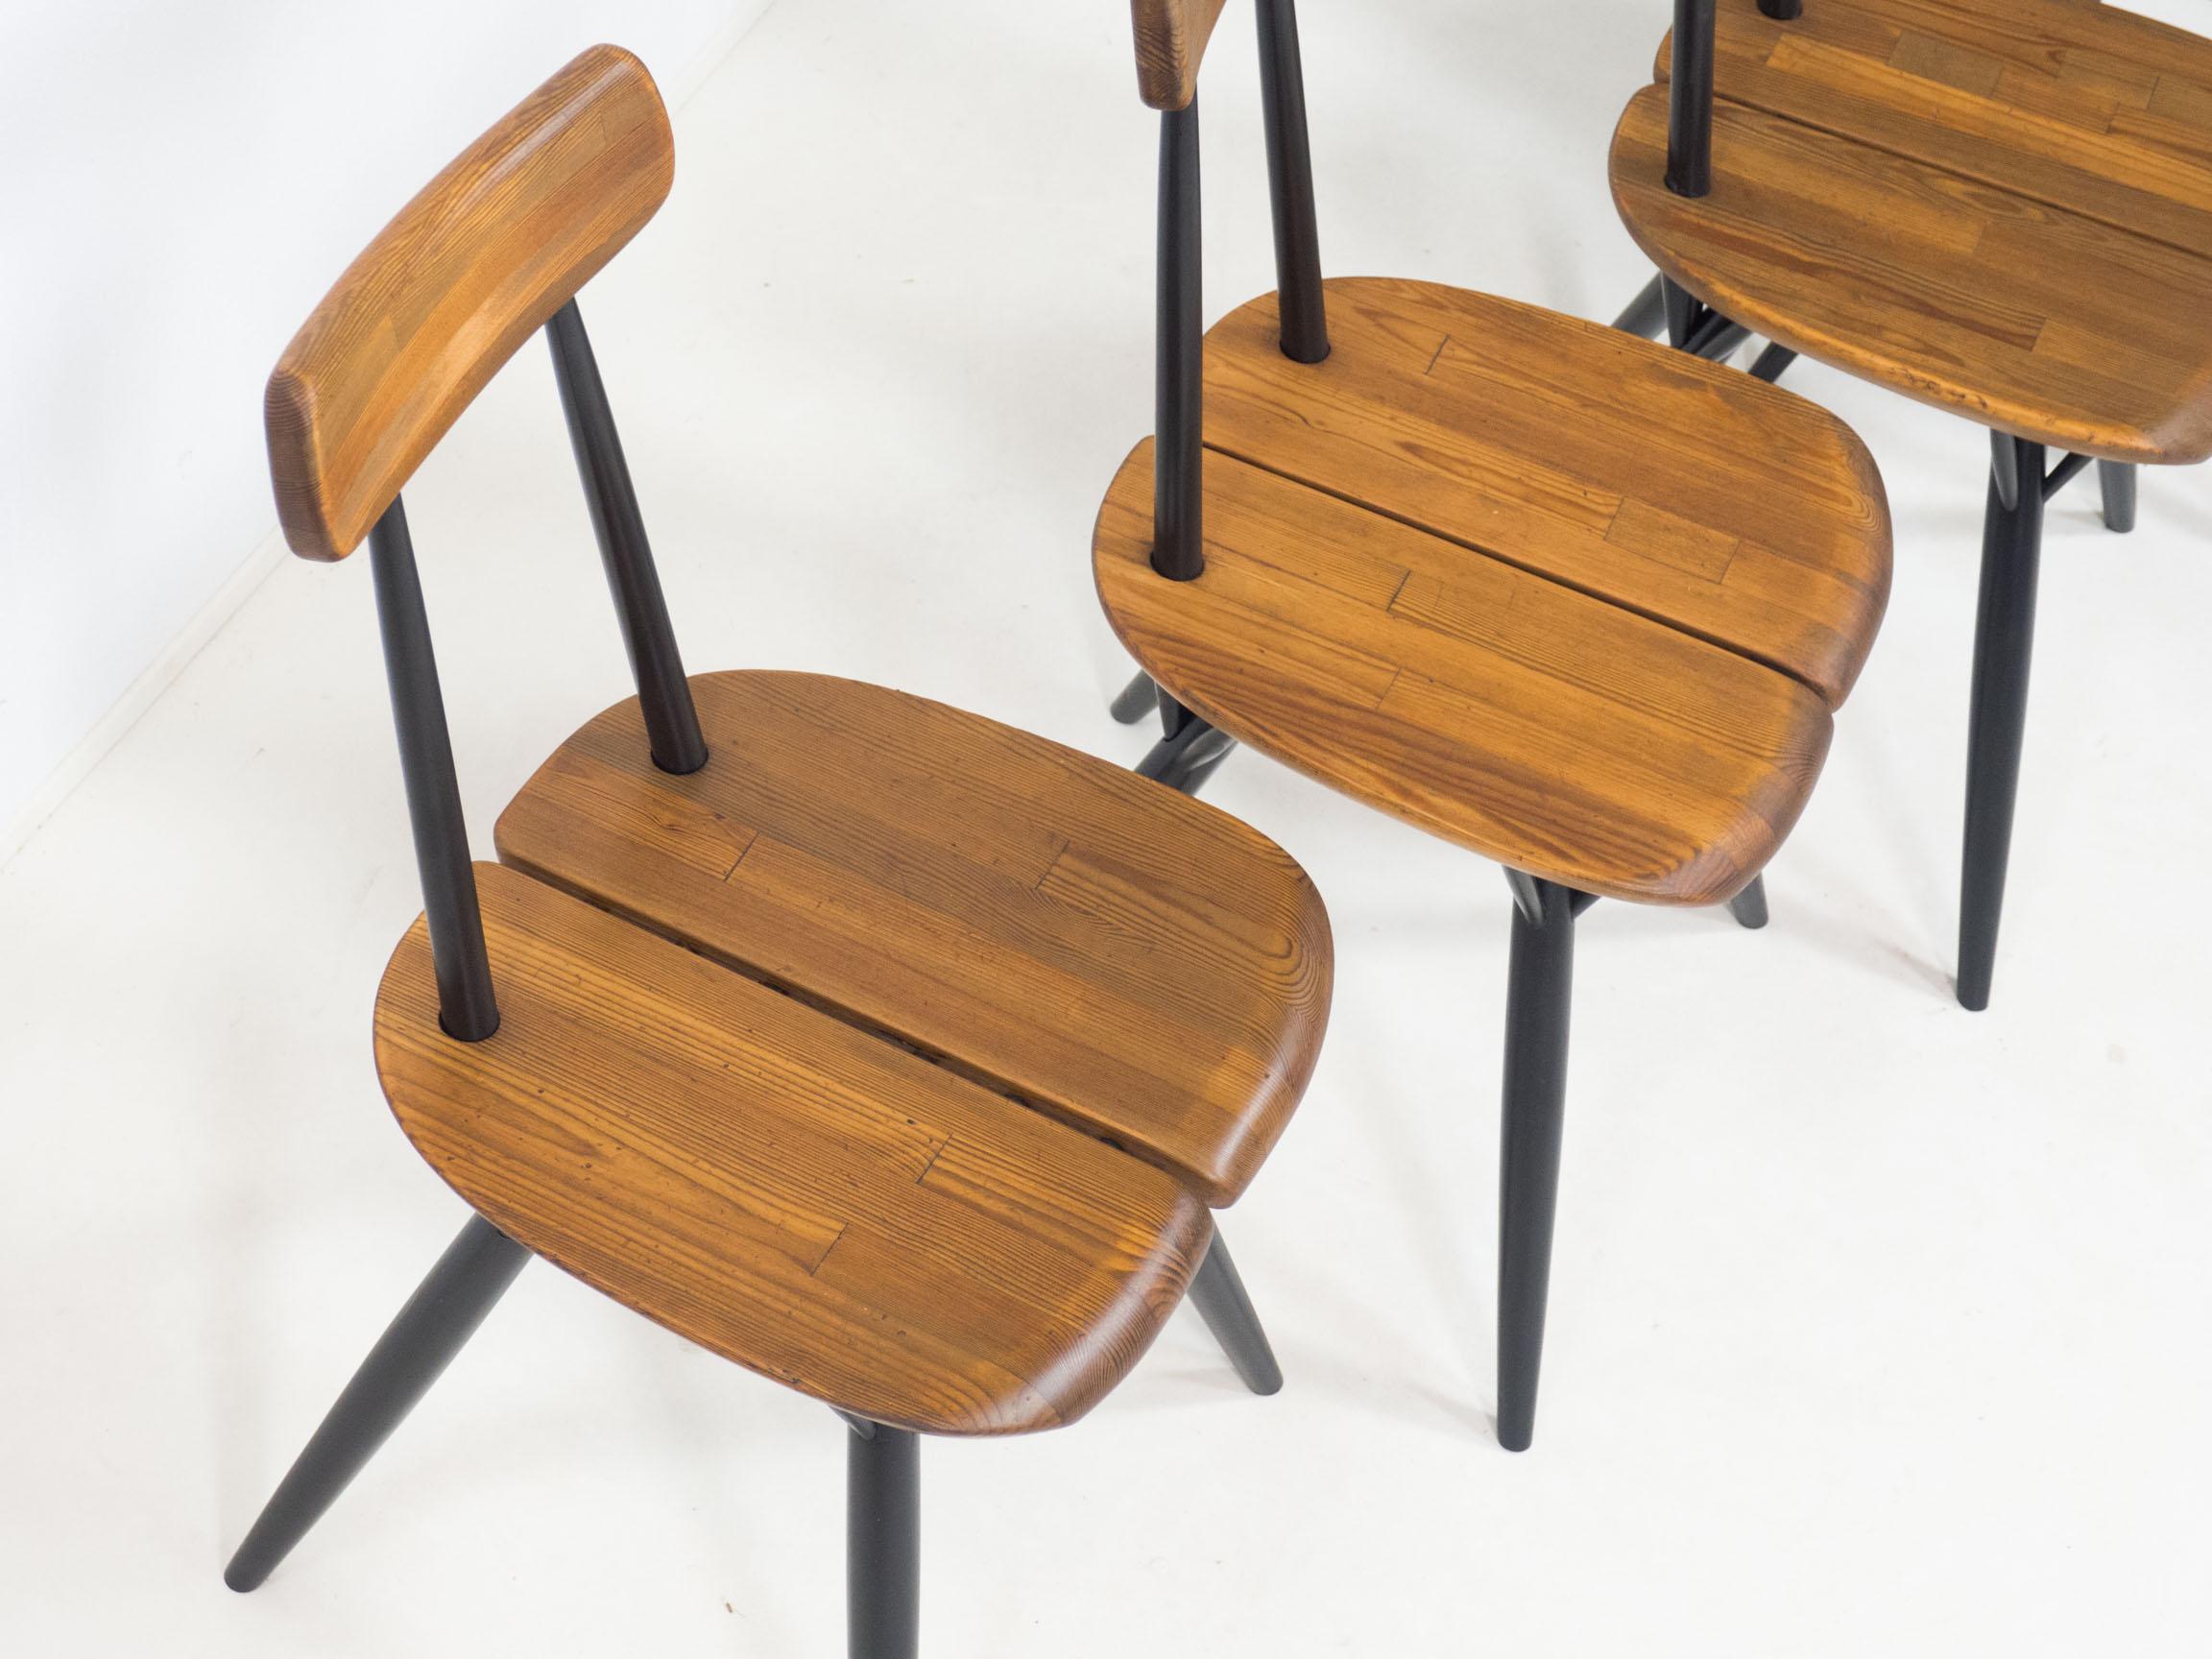 Satz von vier frühen Pirkka-Stühlen, entworfen von Ilmari Tapiovaara und hergestellt von Laukaan Puu in Finlad in den 1950er Jahren.

Diese Stühle haben ein ikonisches Design und verfügen über Sitzflächen und Rückenlehnen, die aus mehreren massiven